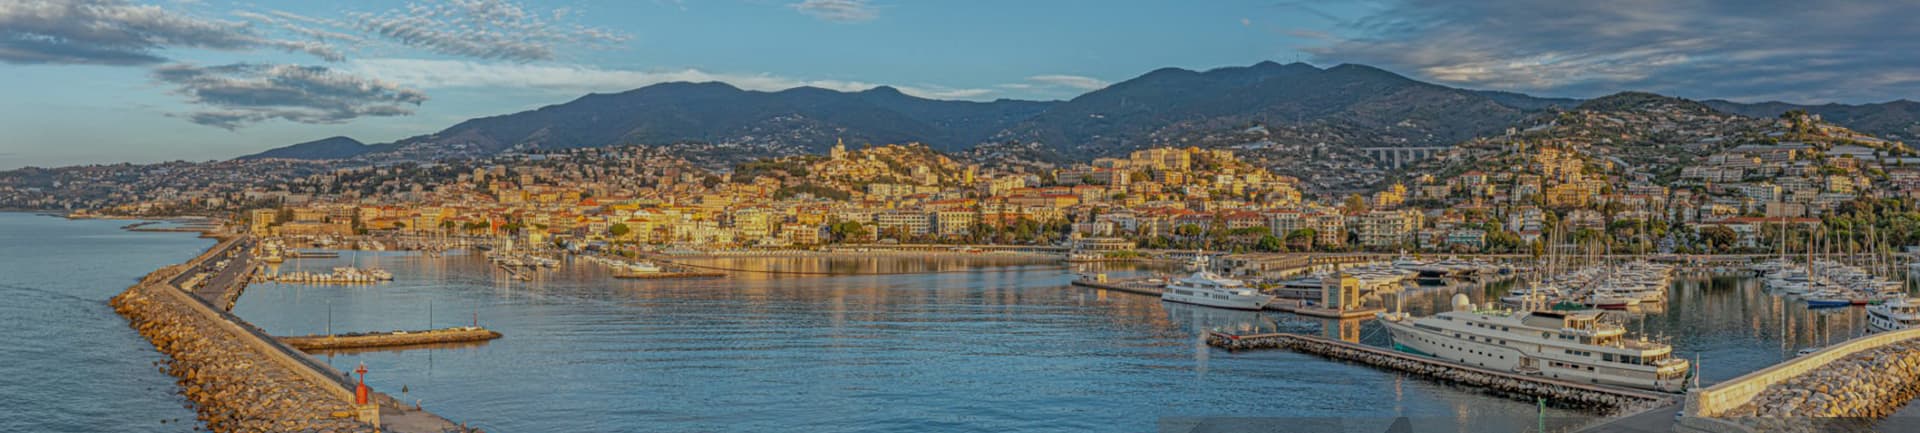 Sanremo da scoprire, l’incanto della città costiera ligure più famosa d’Italia